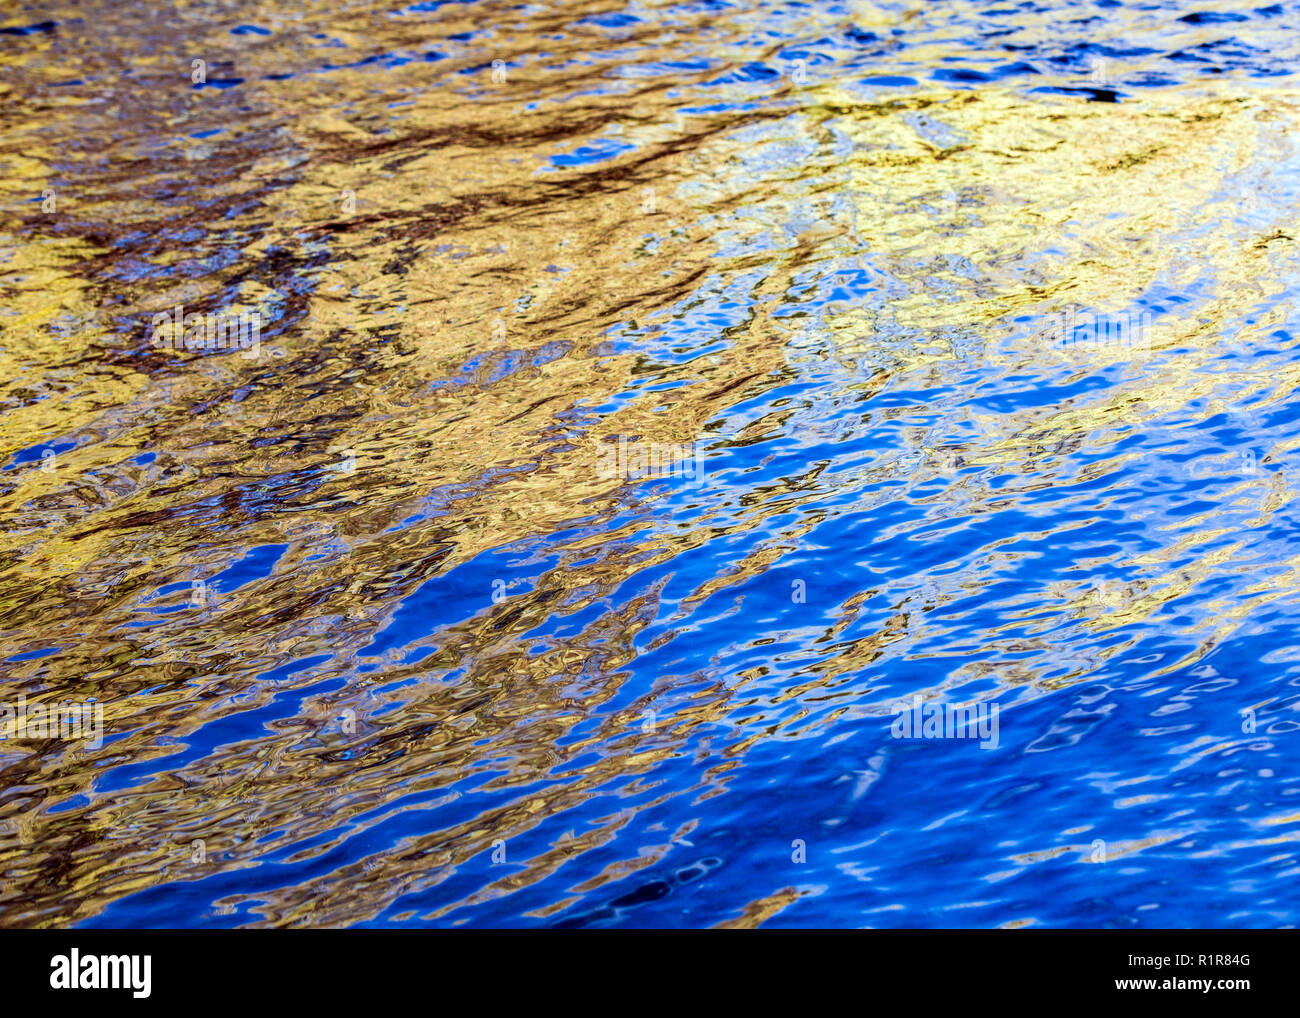 Résumé de l'eau réflexions colorées ; Arkansas River ; Salida ; Colorado ; USA Banque D'Images